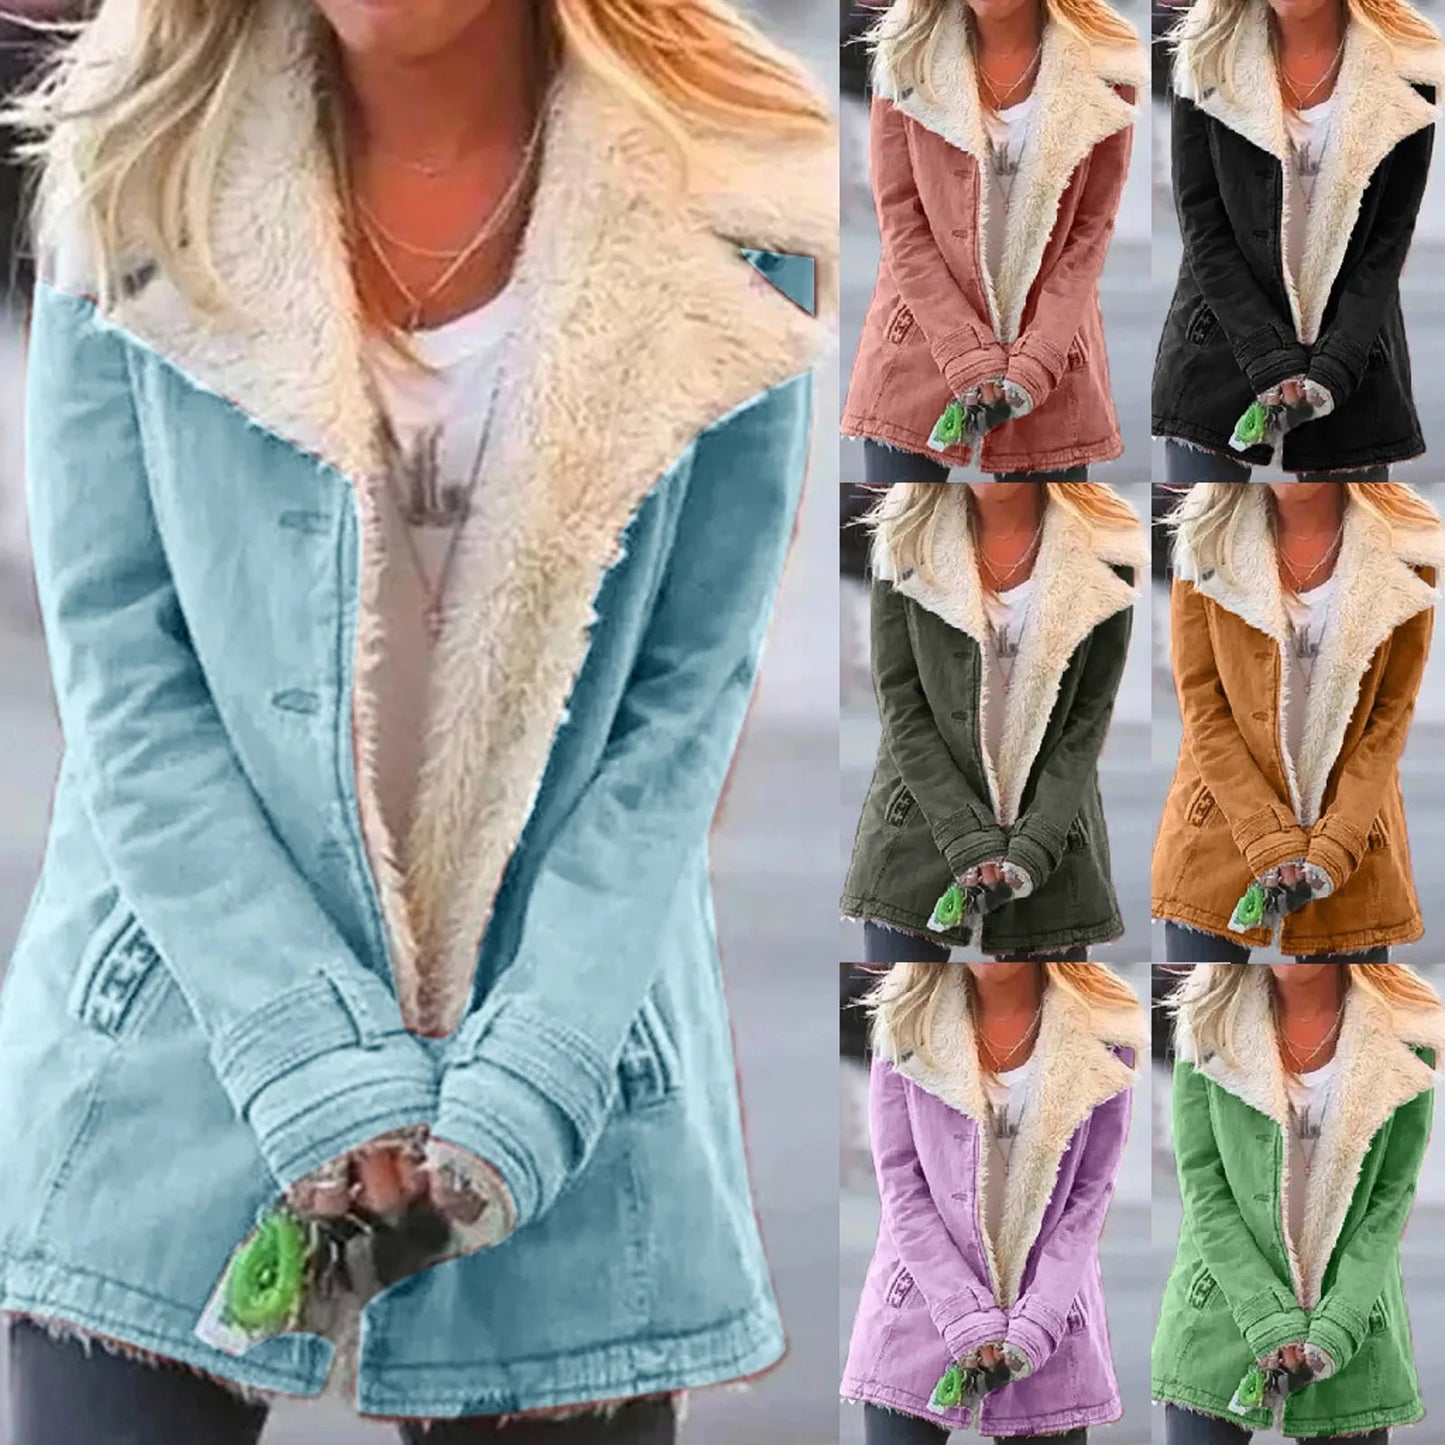 Women's Jacket Buckle Pockets Solid Color Fleece Lined Overcoat